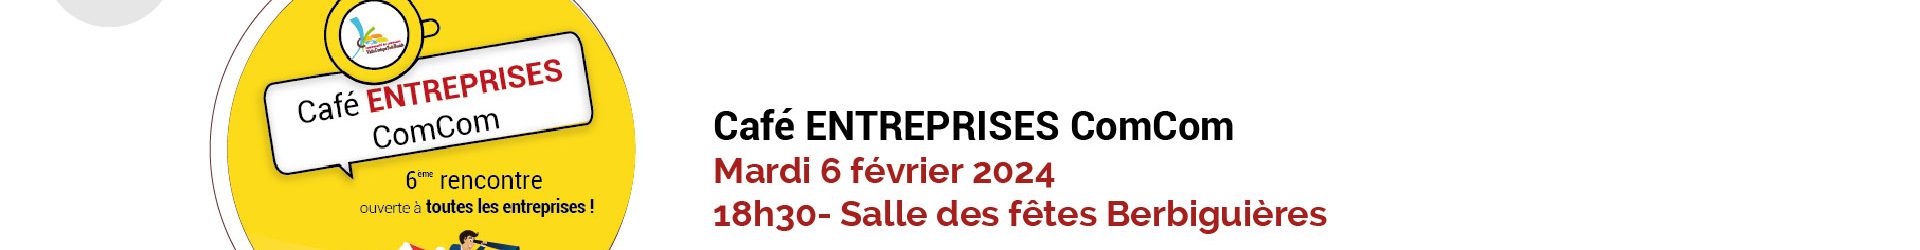 Café Entreprises – Prochaine rencontre Mardi 6 février 2024 – Berbiguières